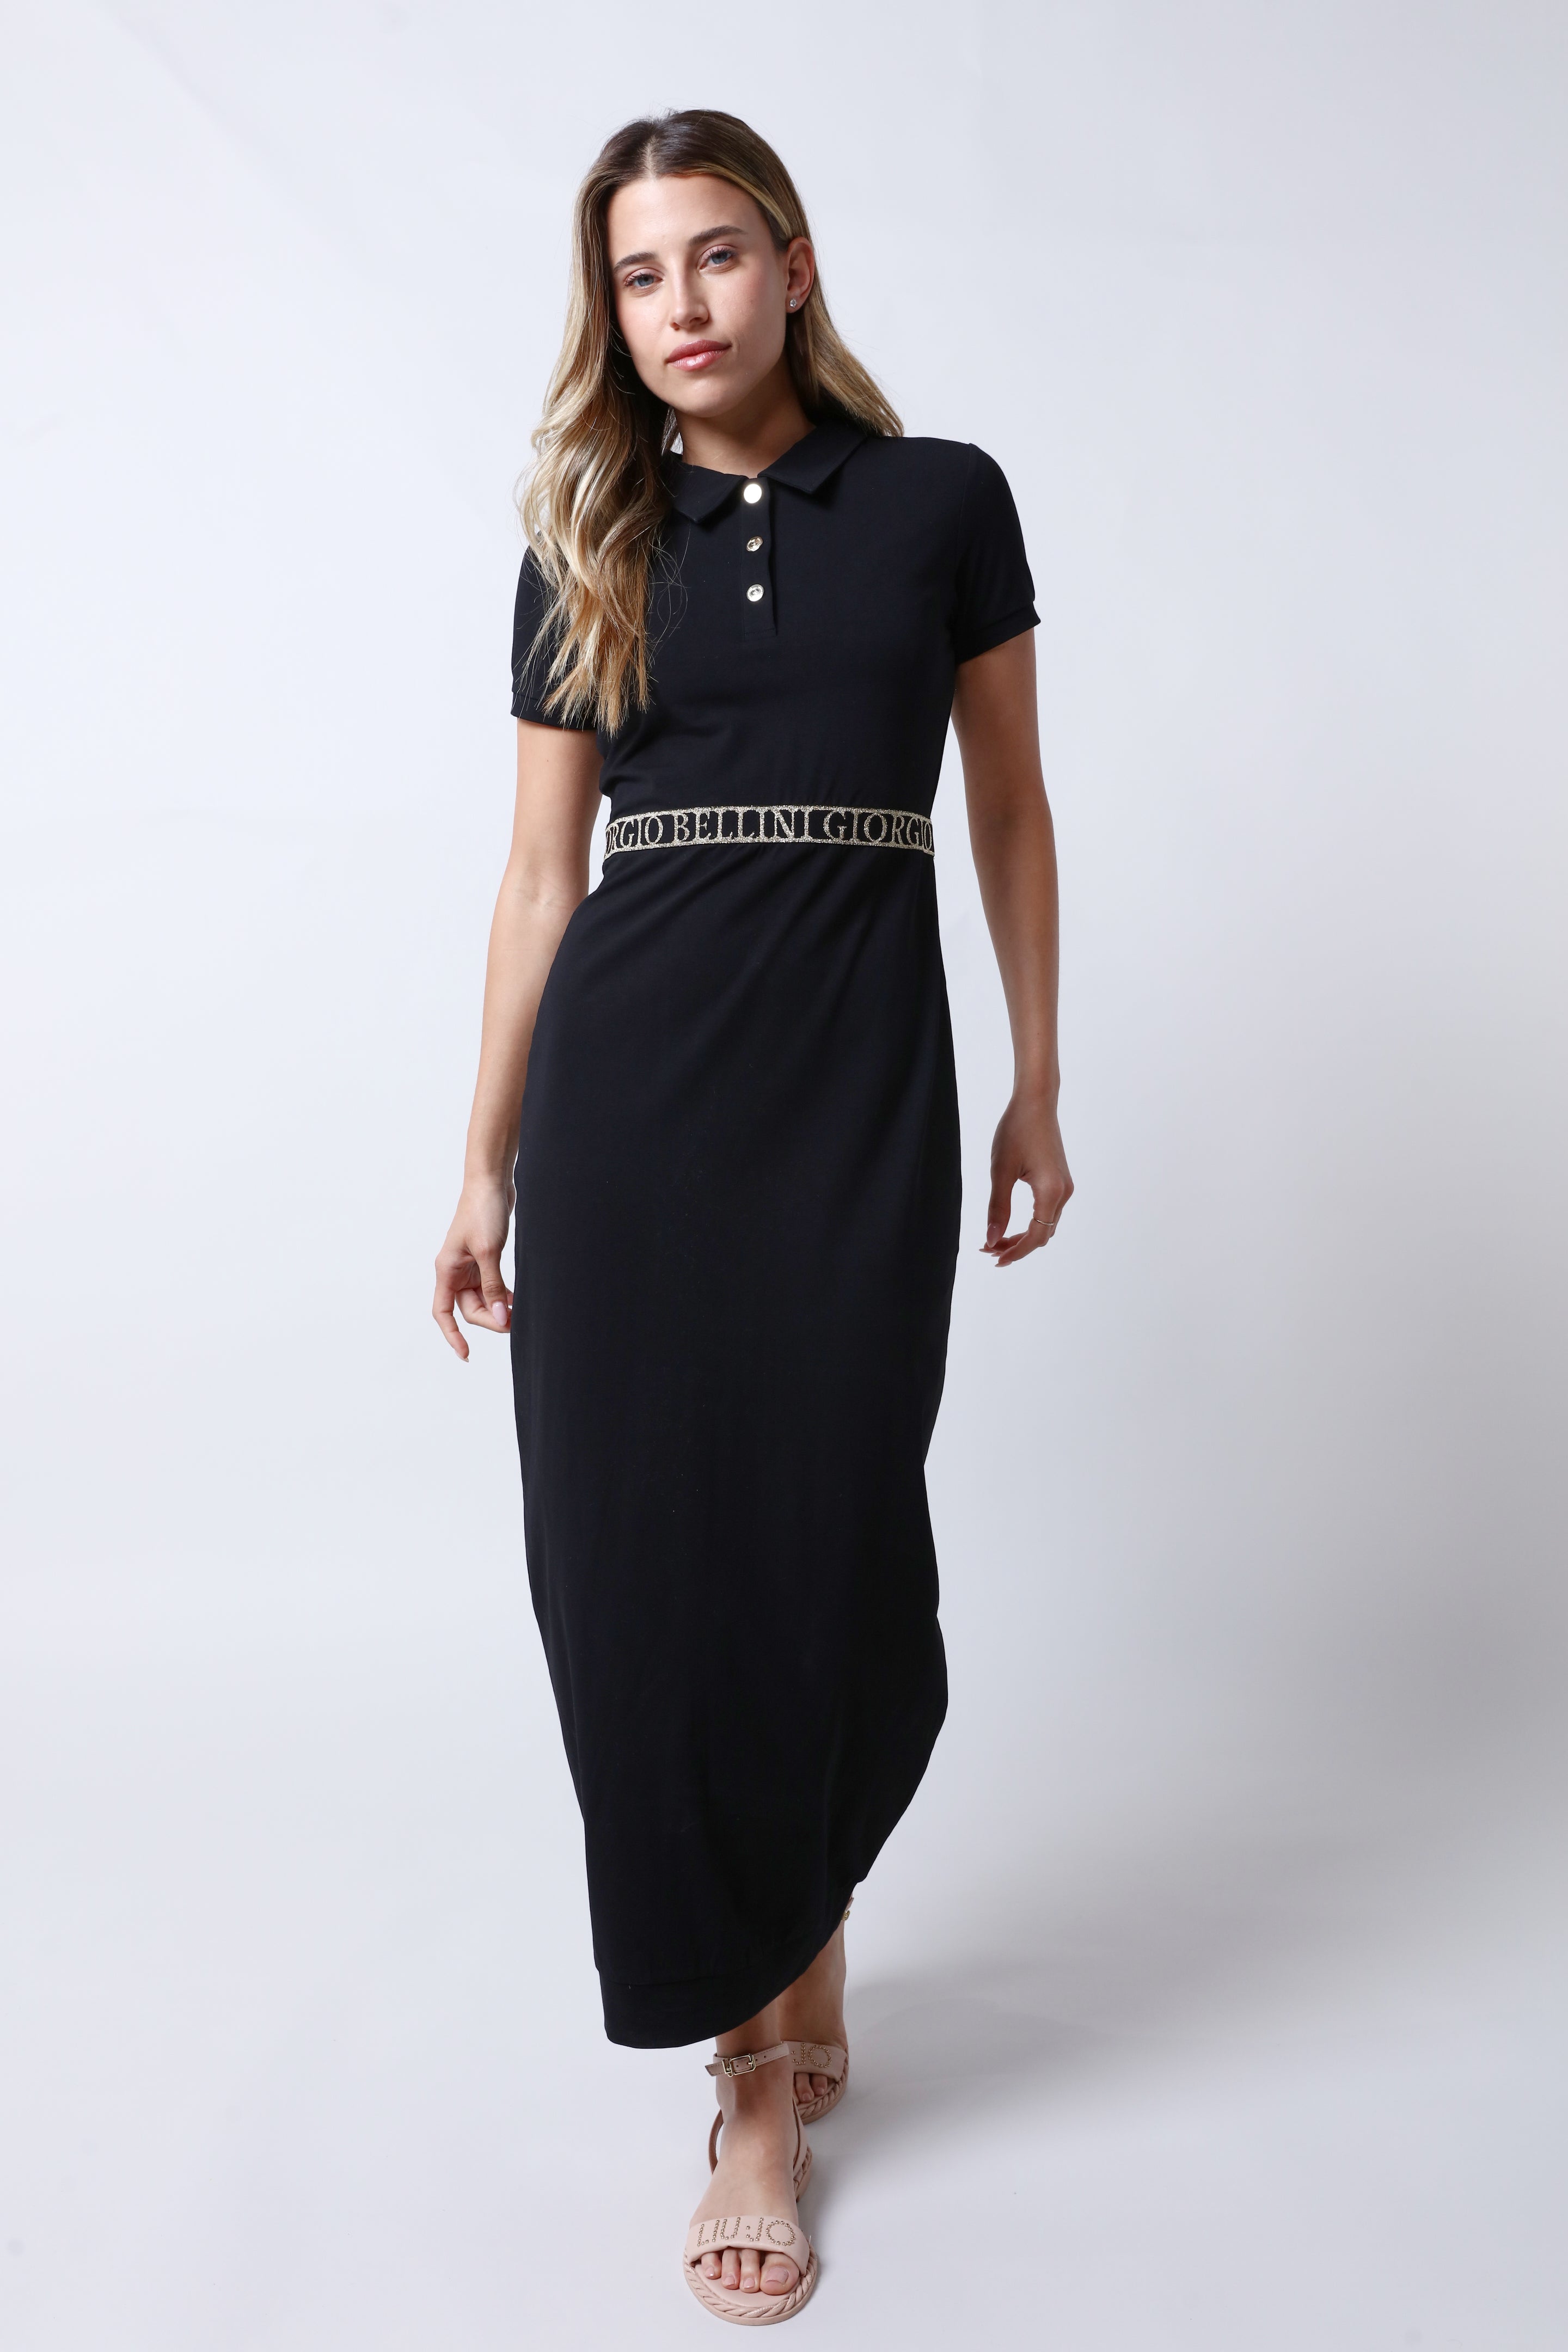 שמלה GIORGIO BELLINI בצבע שחור לנשים